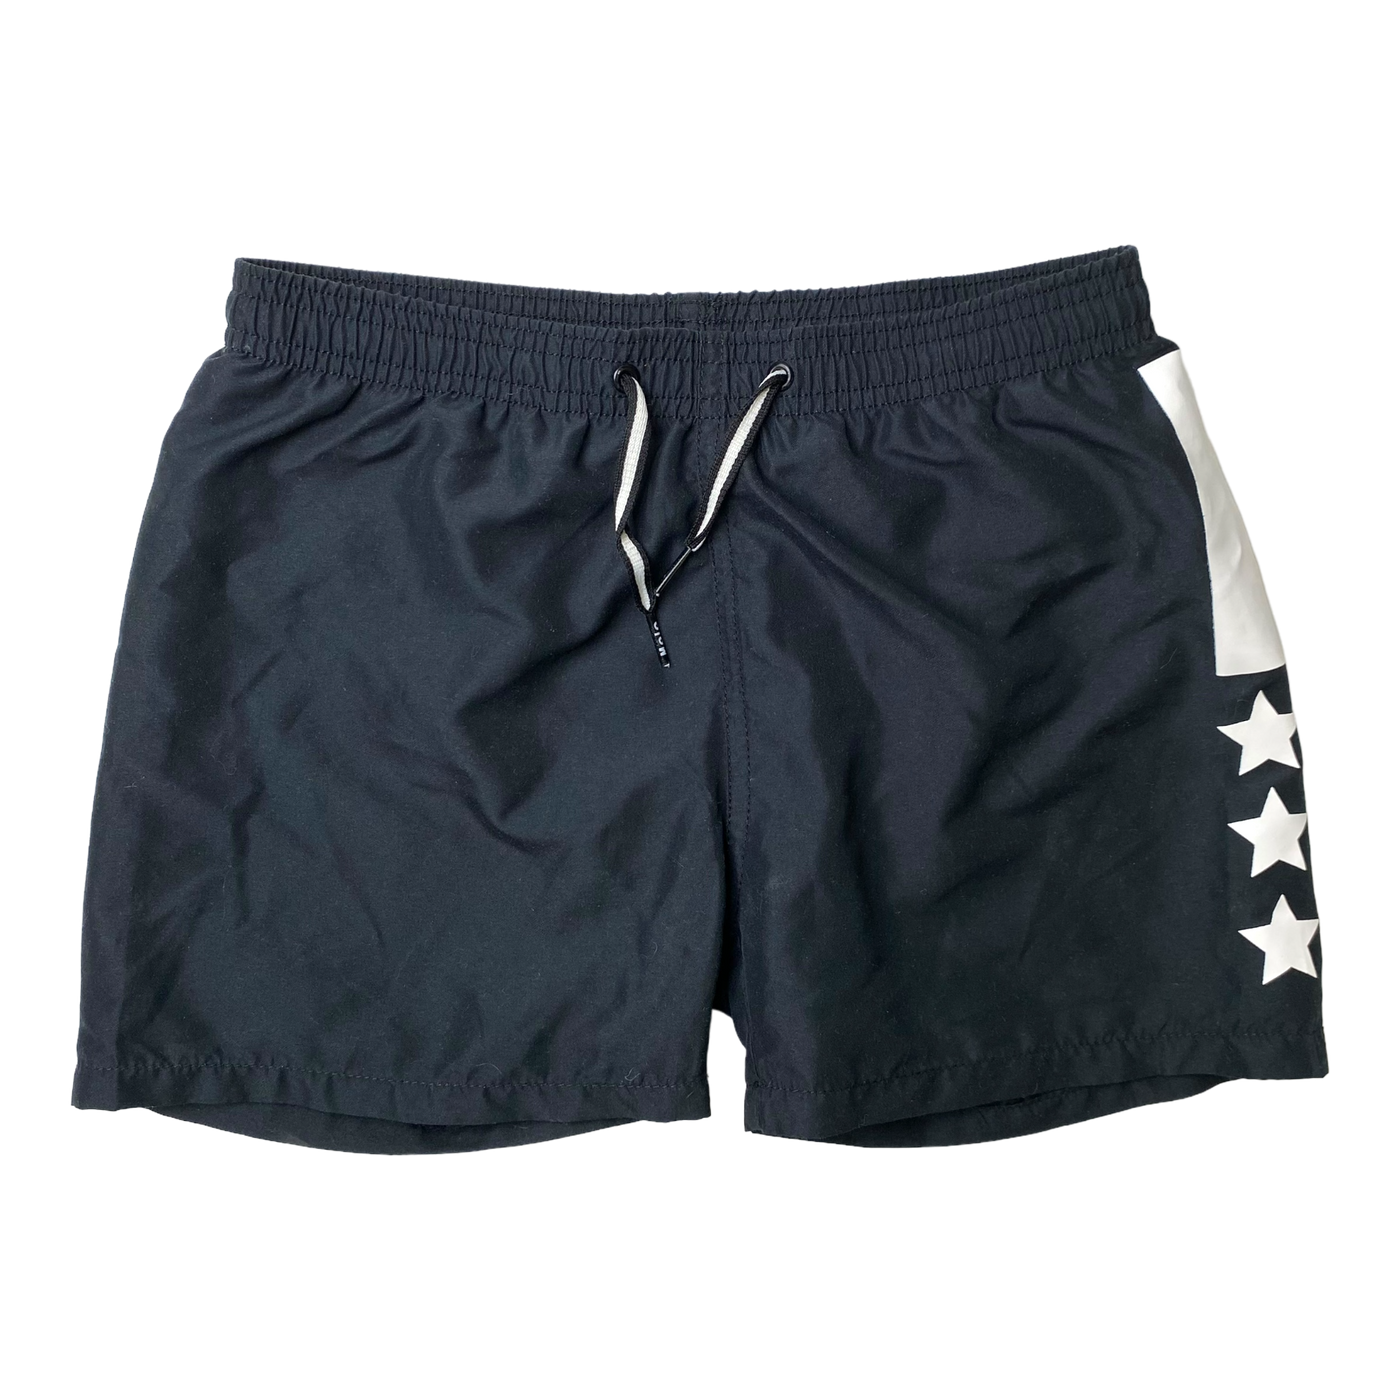 Molo swim shorts, black| 134/140cm